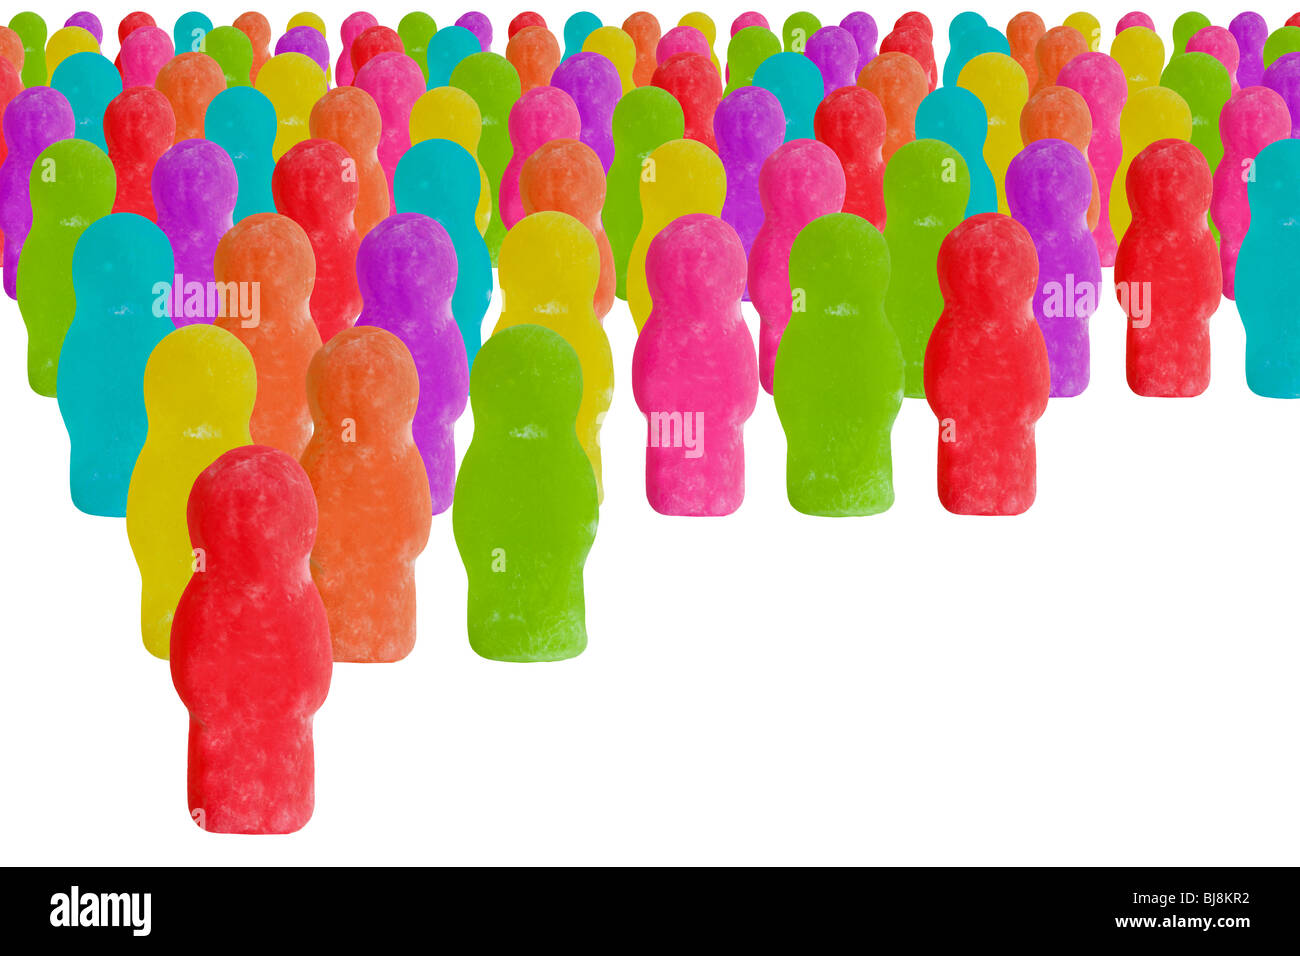 Serie de imágenes jellybaby colorfulconceptual con usos comerciales y de estilo de vida. Éxito, fracaso, trabajo en equipo,liderazgo,familia. Foto de stock